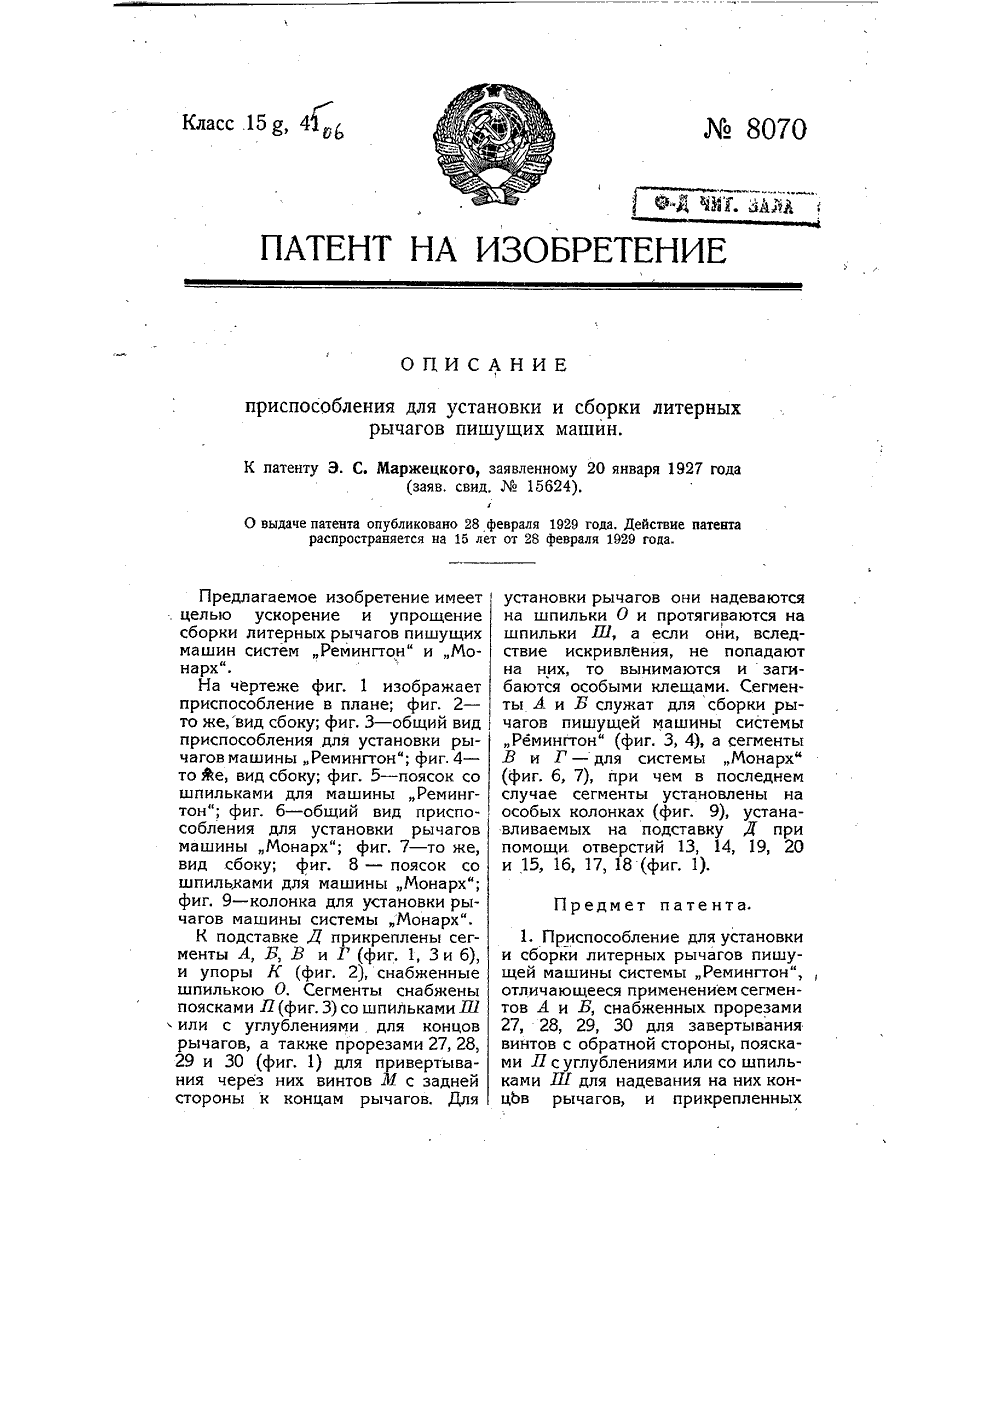 8070-prisposoblenie-dlya-ustanovki-i-sborki-liternykh-rychagov-pishushhikh-mashin-1.png